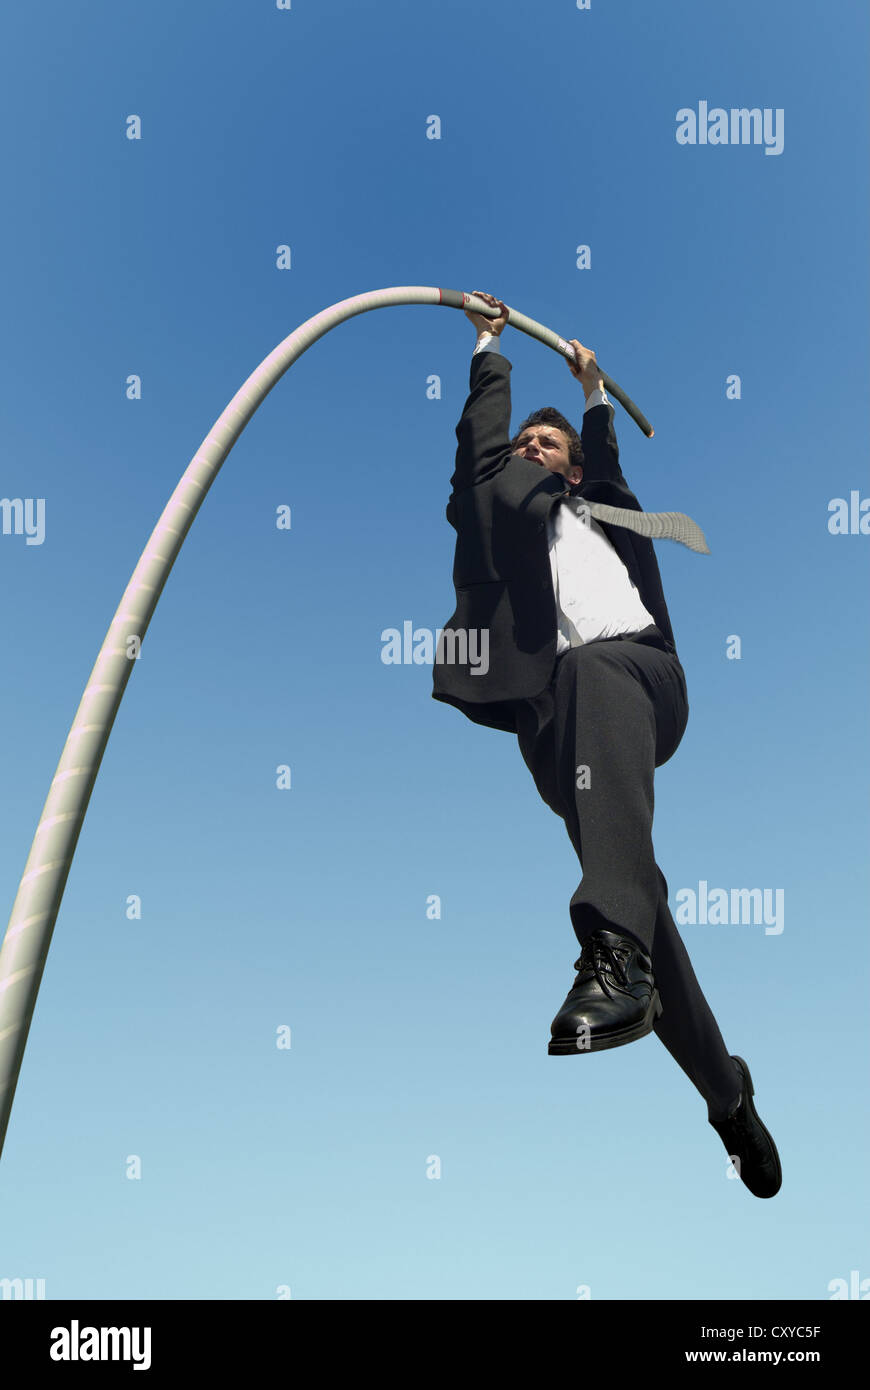 Empresario saltos con pértiga, imagen simbólica Foto de stock